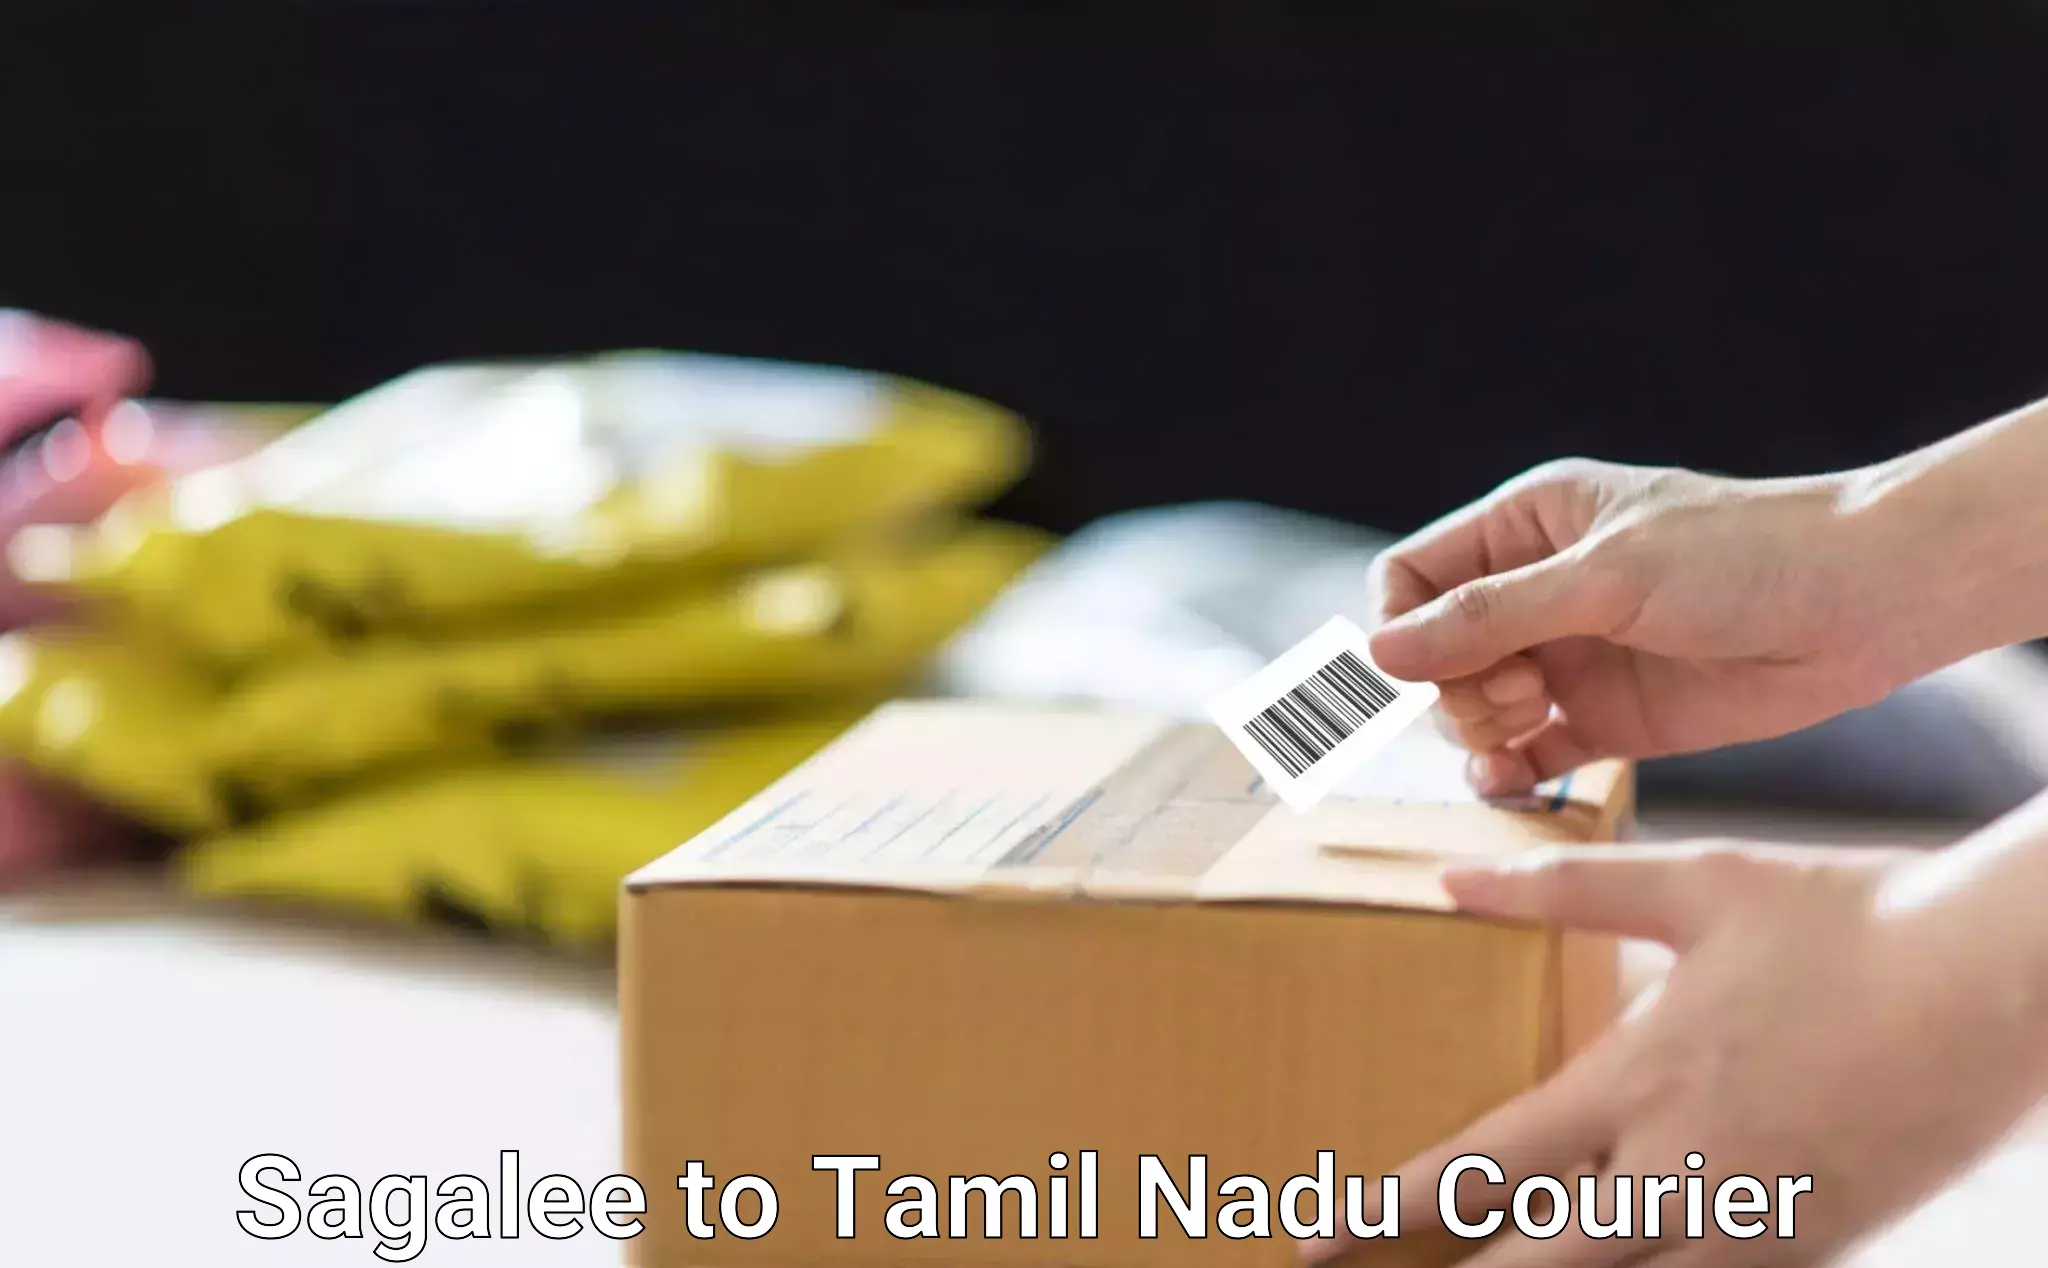 Supply chain efficiency Sagalee to Tamil Nadu